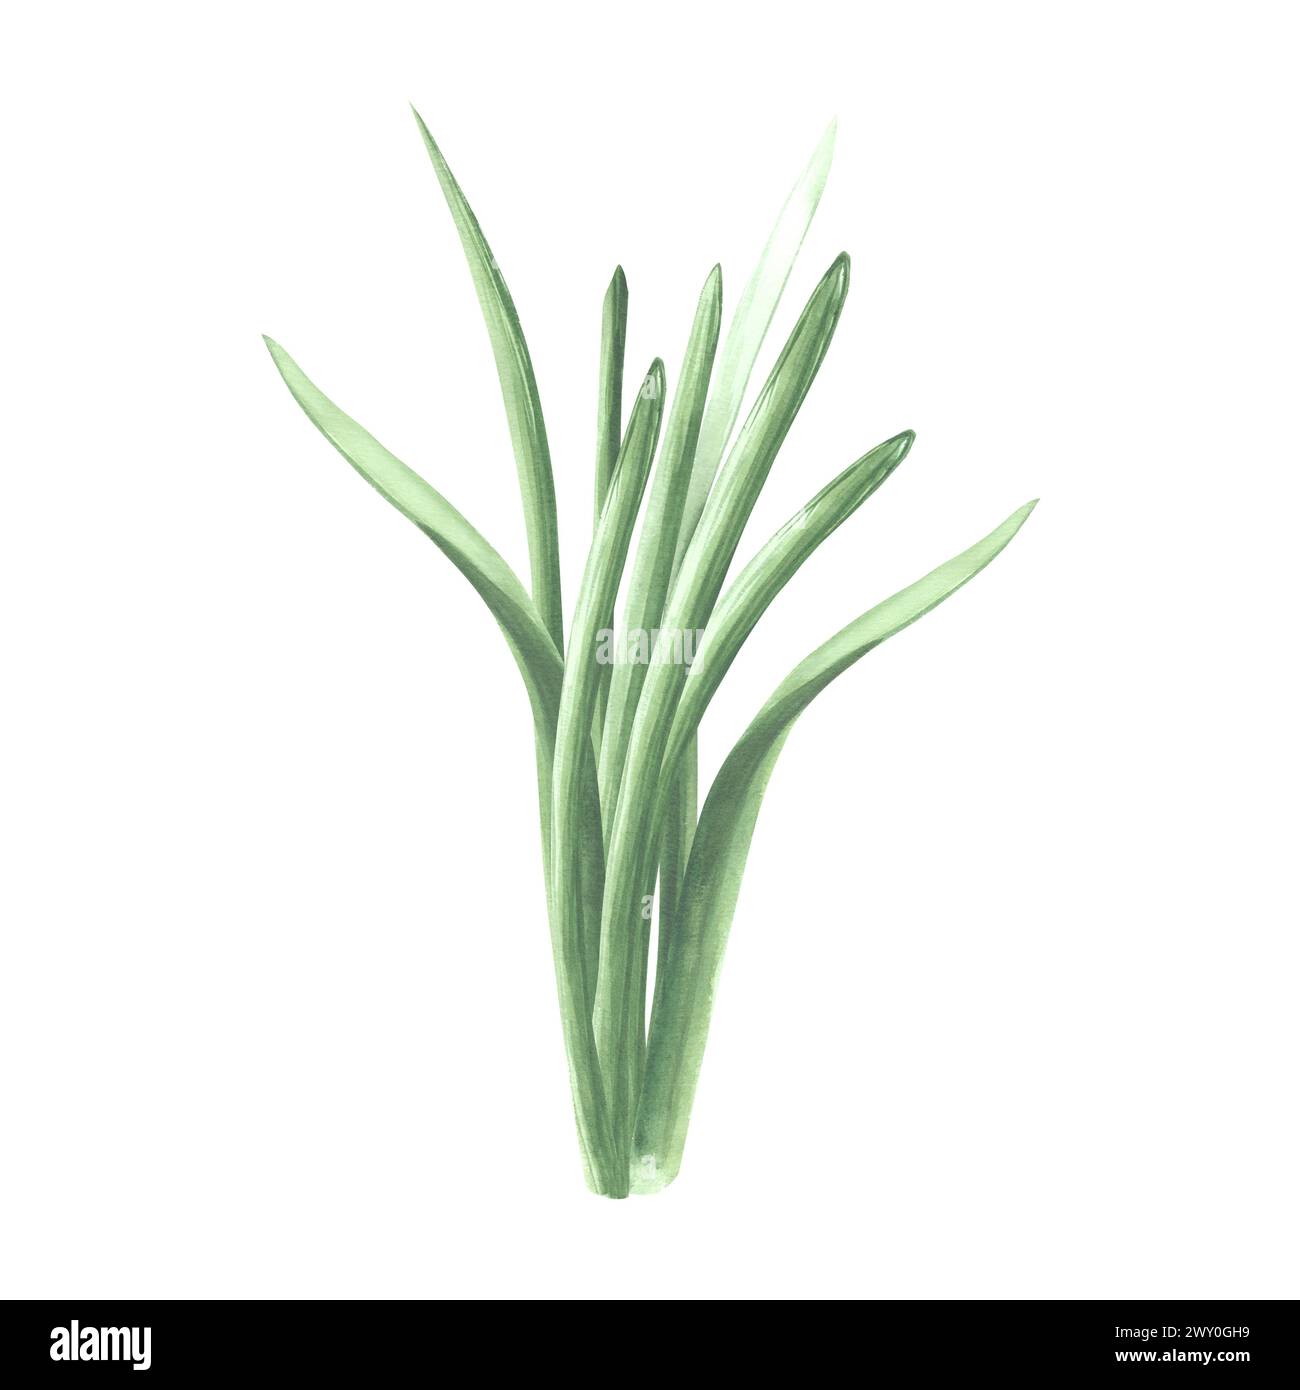 Ein Haufen grünes Gras. Isolierte handgezeichnete Aquarellillustration von Grün, Kraut. Zeichentrickwiesen-Pflanzenzeichnung. Botanische Vorlage für Begrüßung Stockfoto